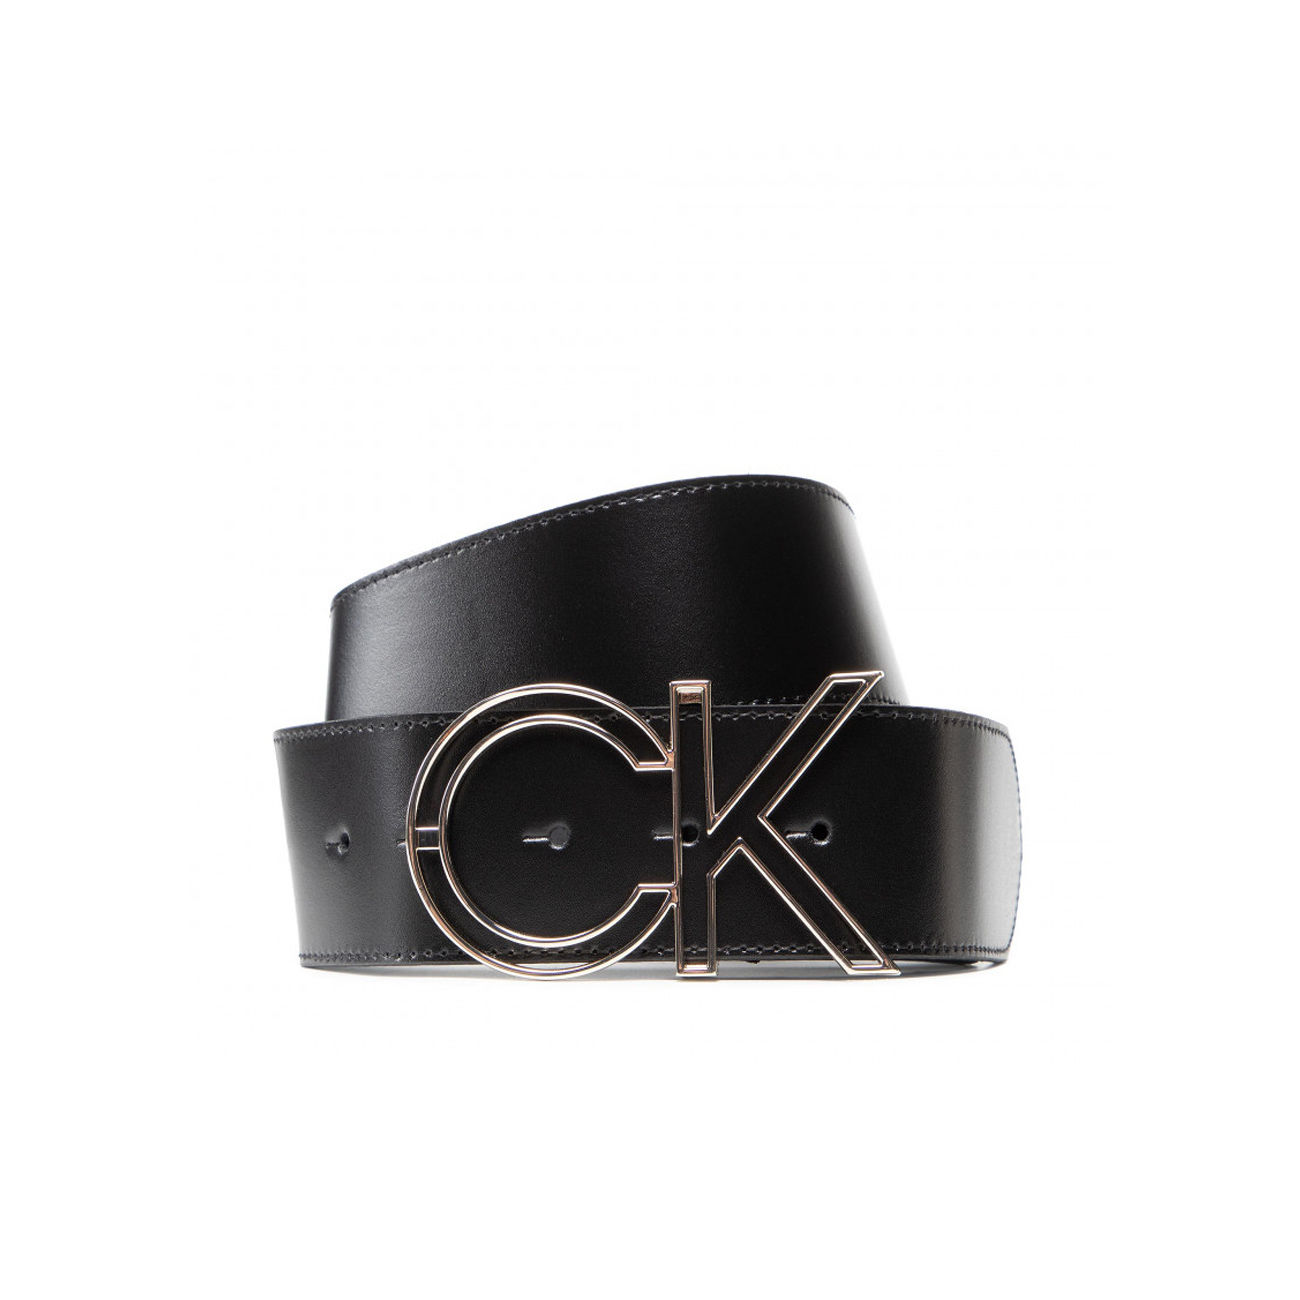 Calvin Klein Charm-Buckle Belt